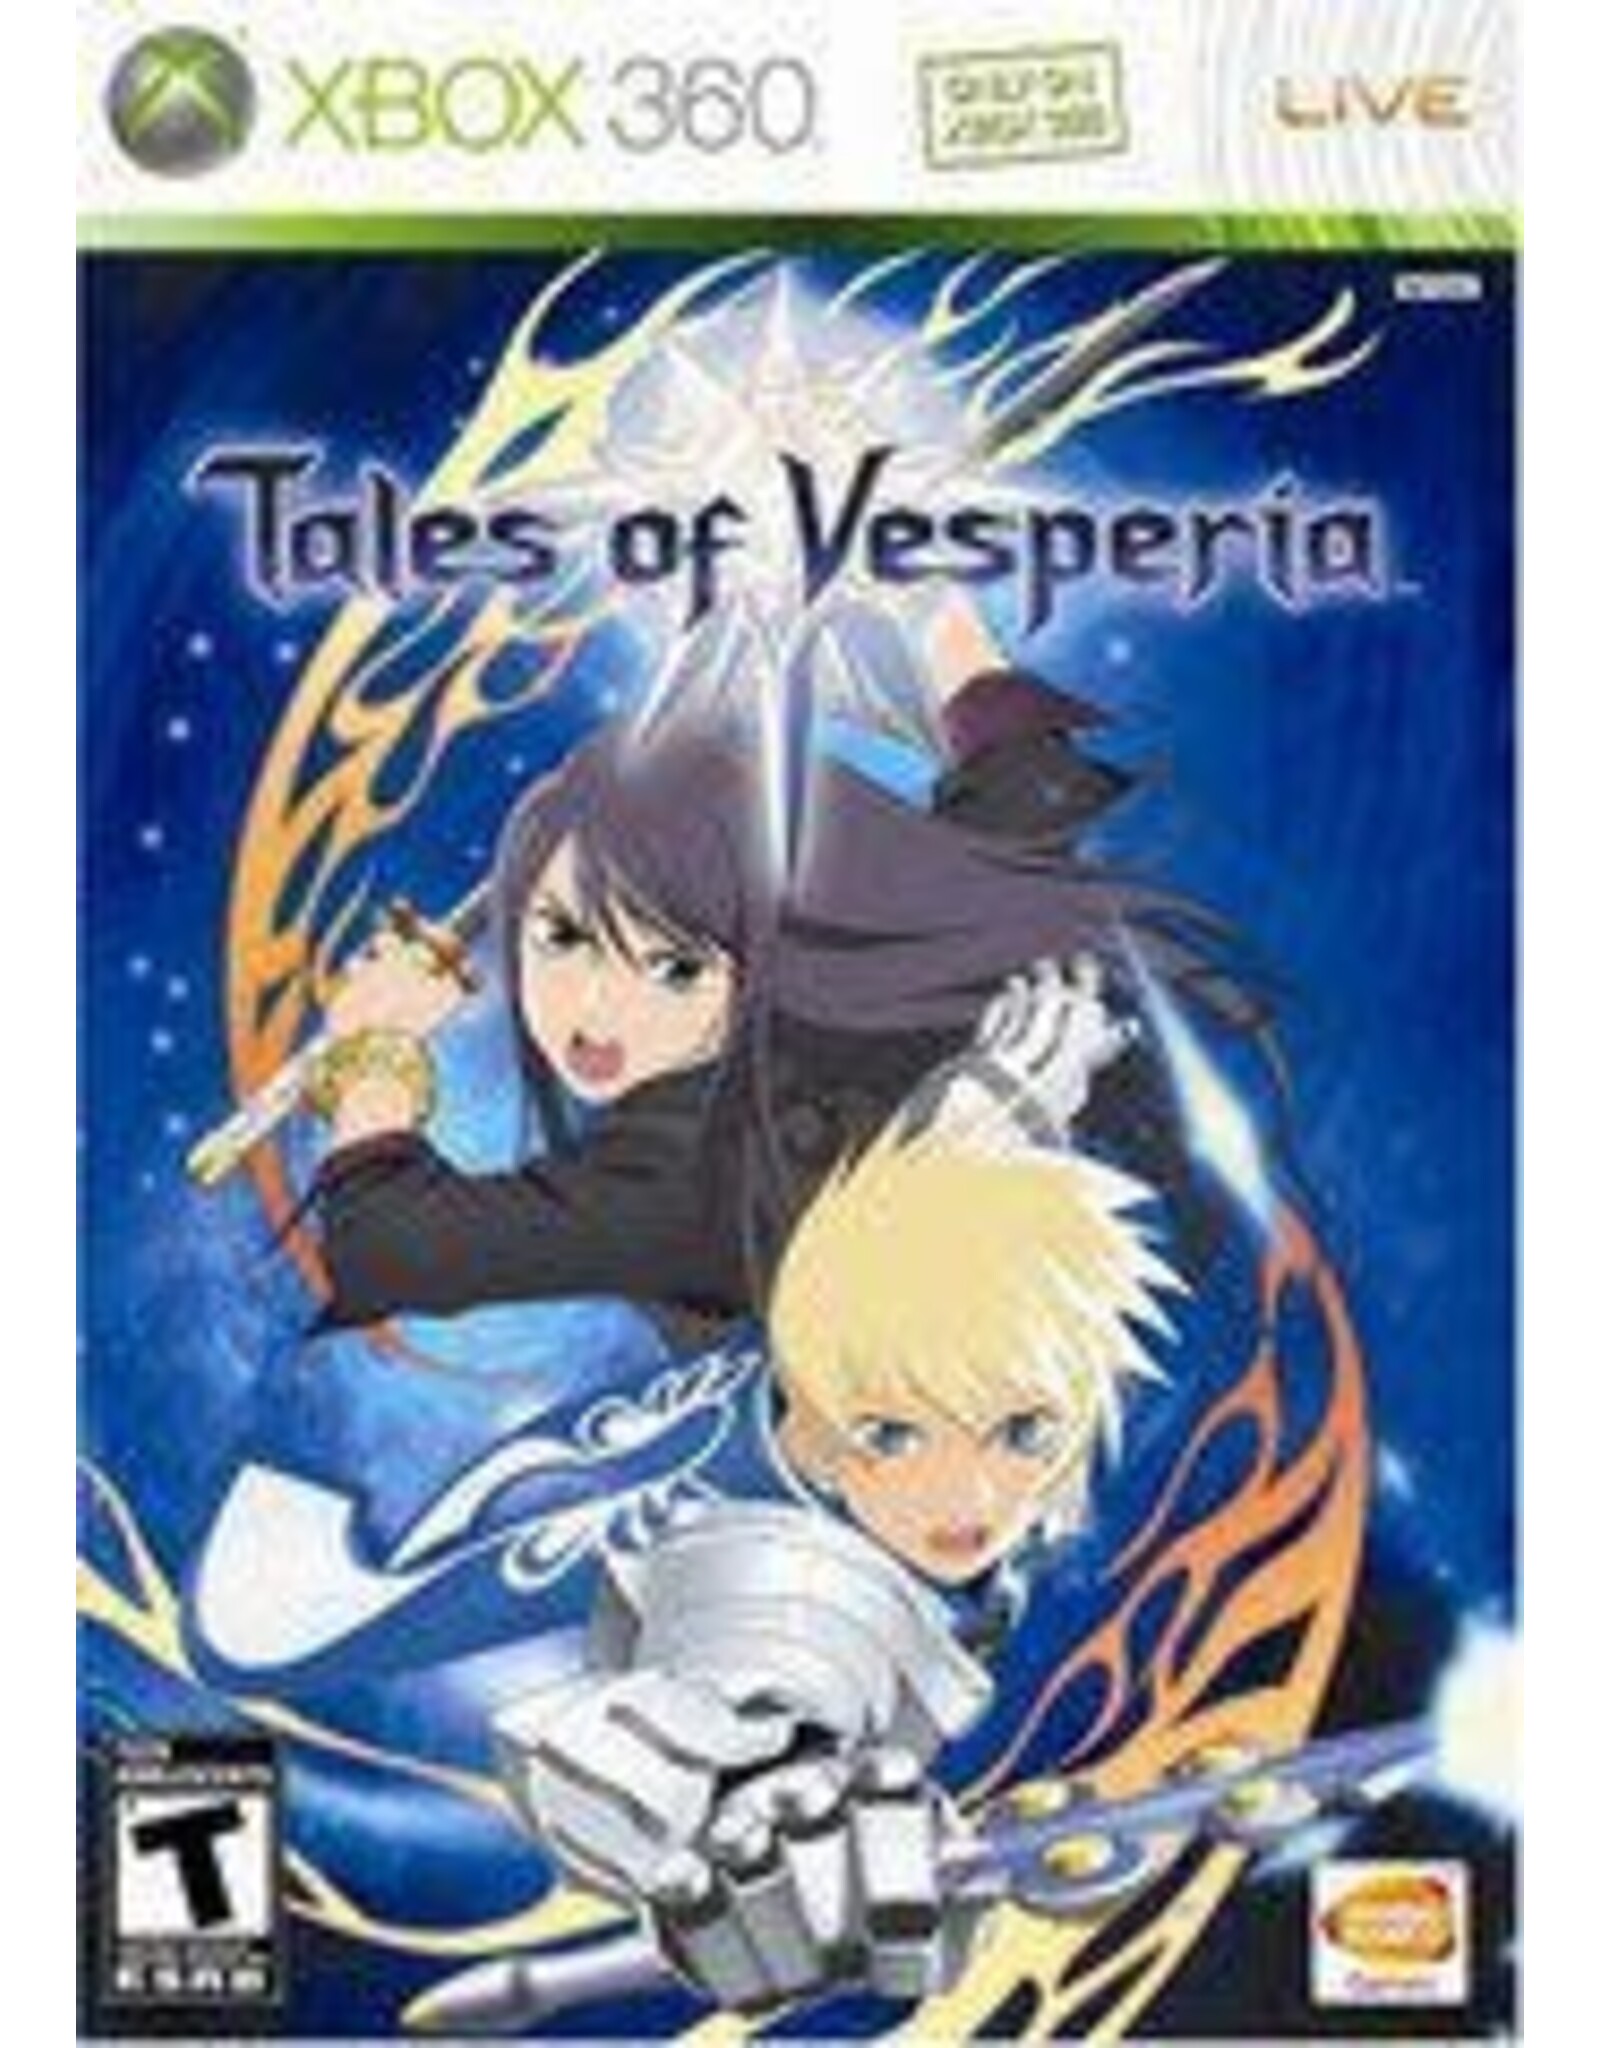 Xbox 360 Tales of Vesperia (No Manual)